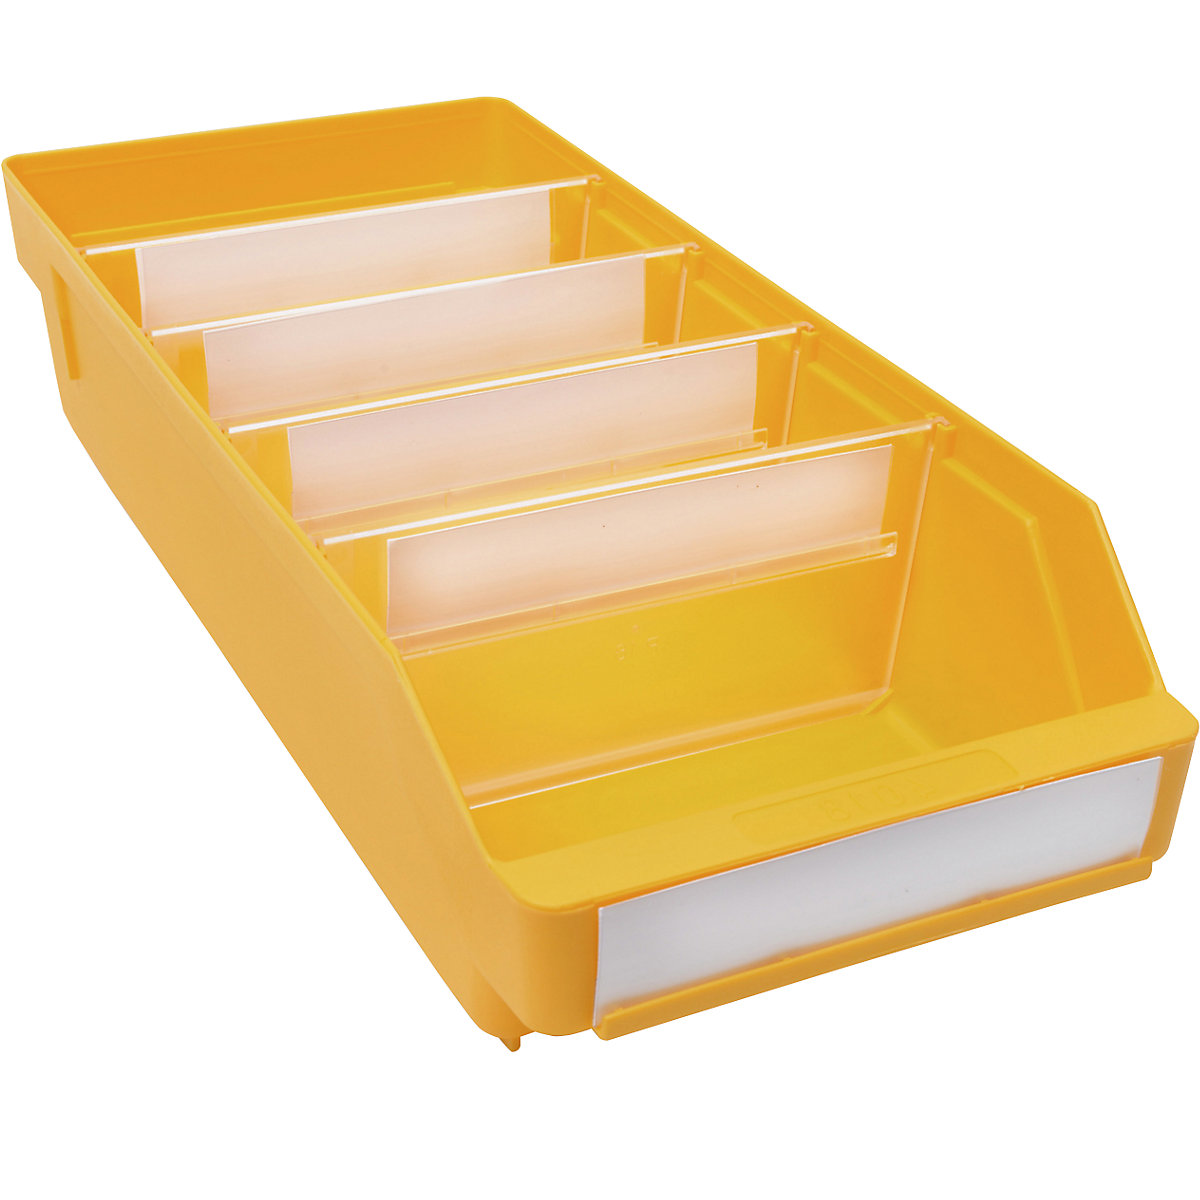 Regalkasten aus hochschlagfestem Polypropylen STEMO, gelb, LxBxH 400 x 180 x 95 mm, VE 20 Stk-11